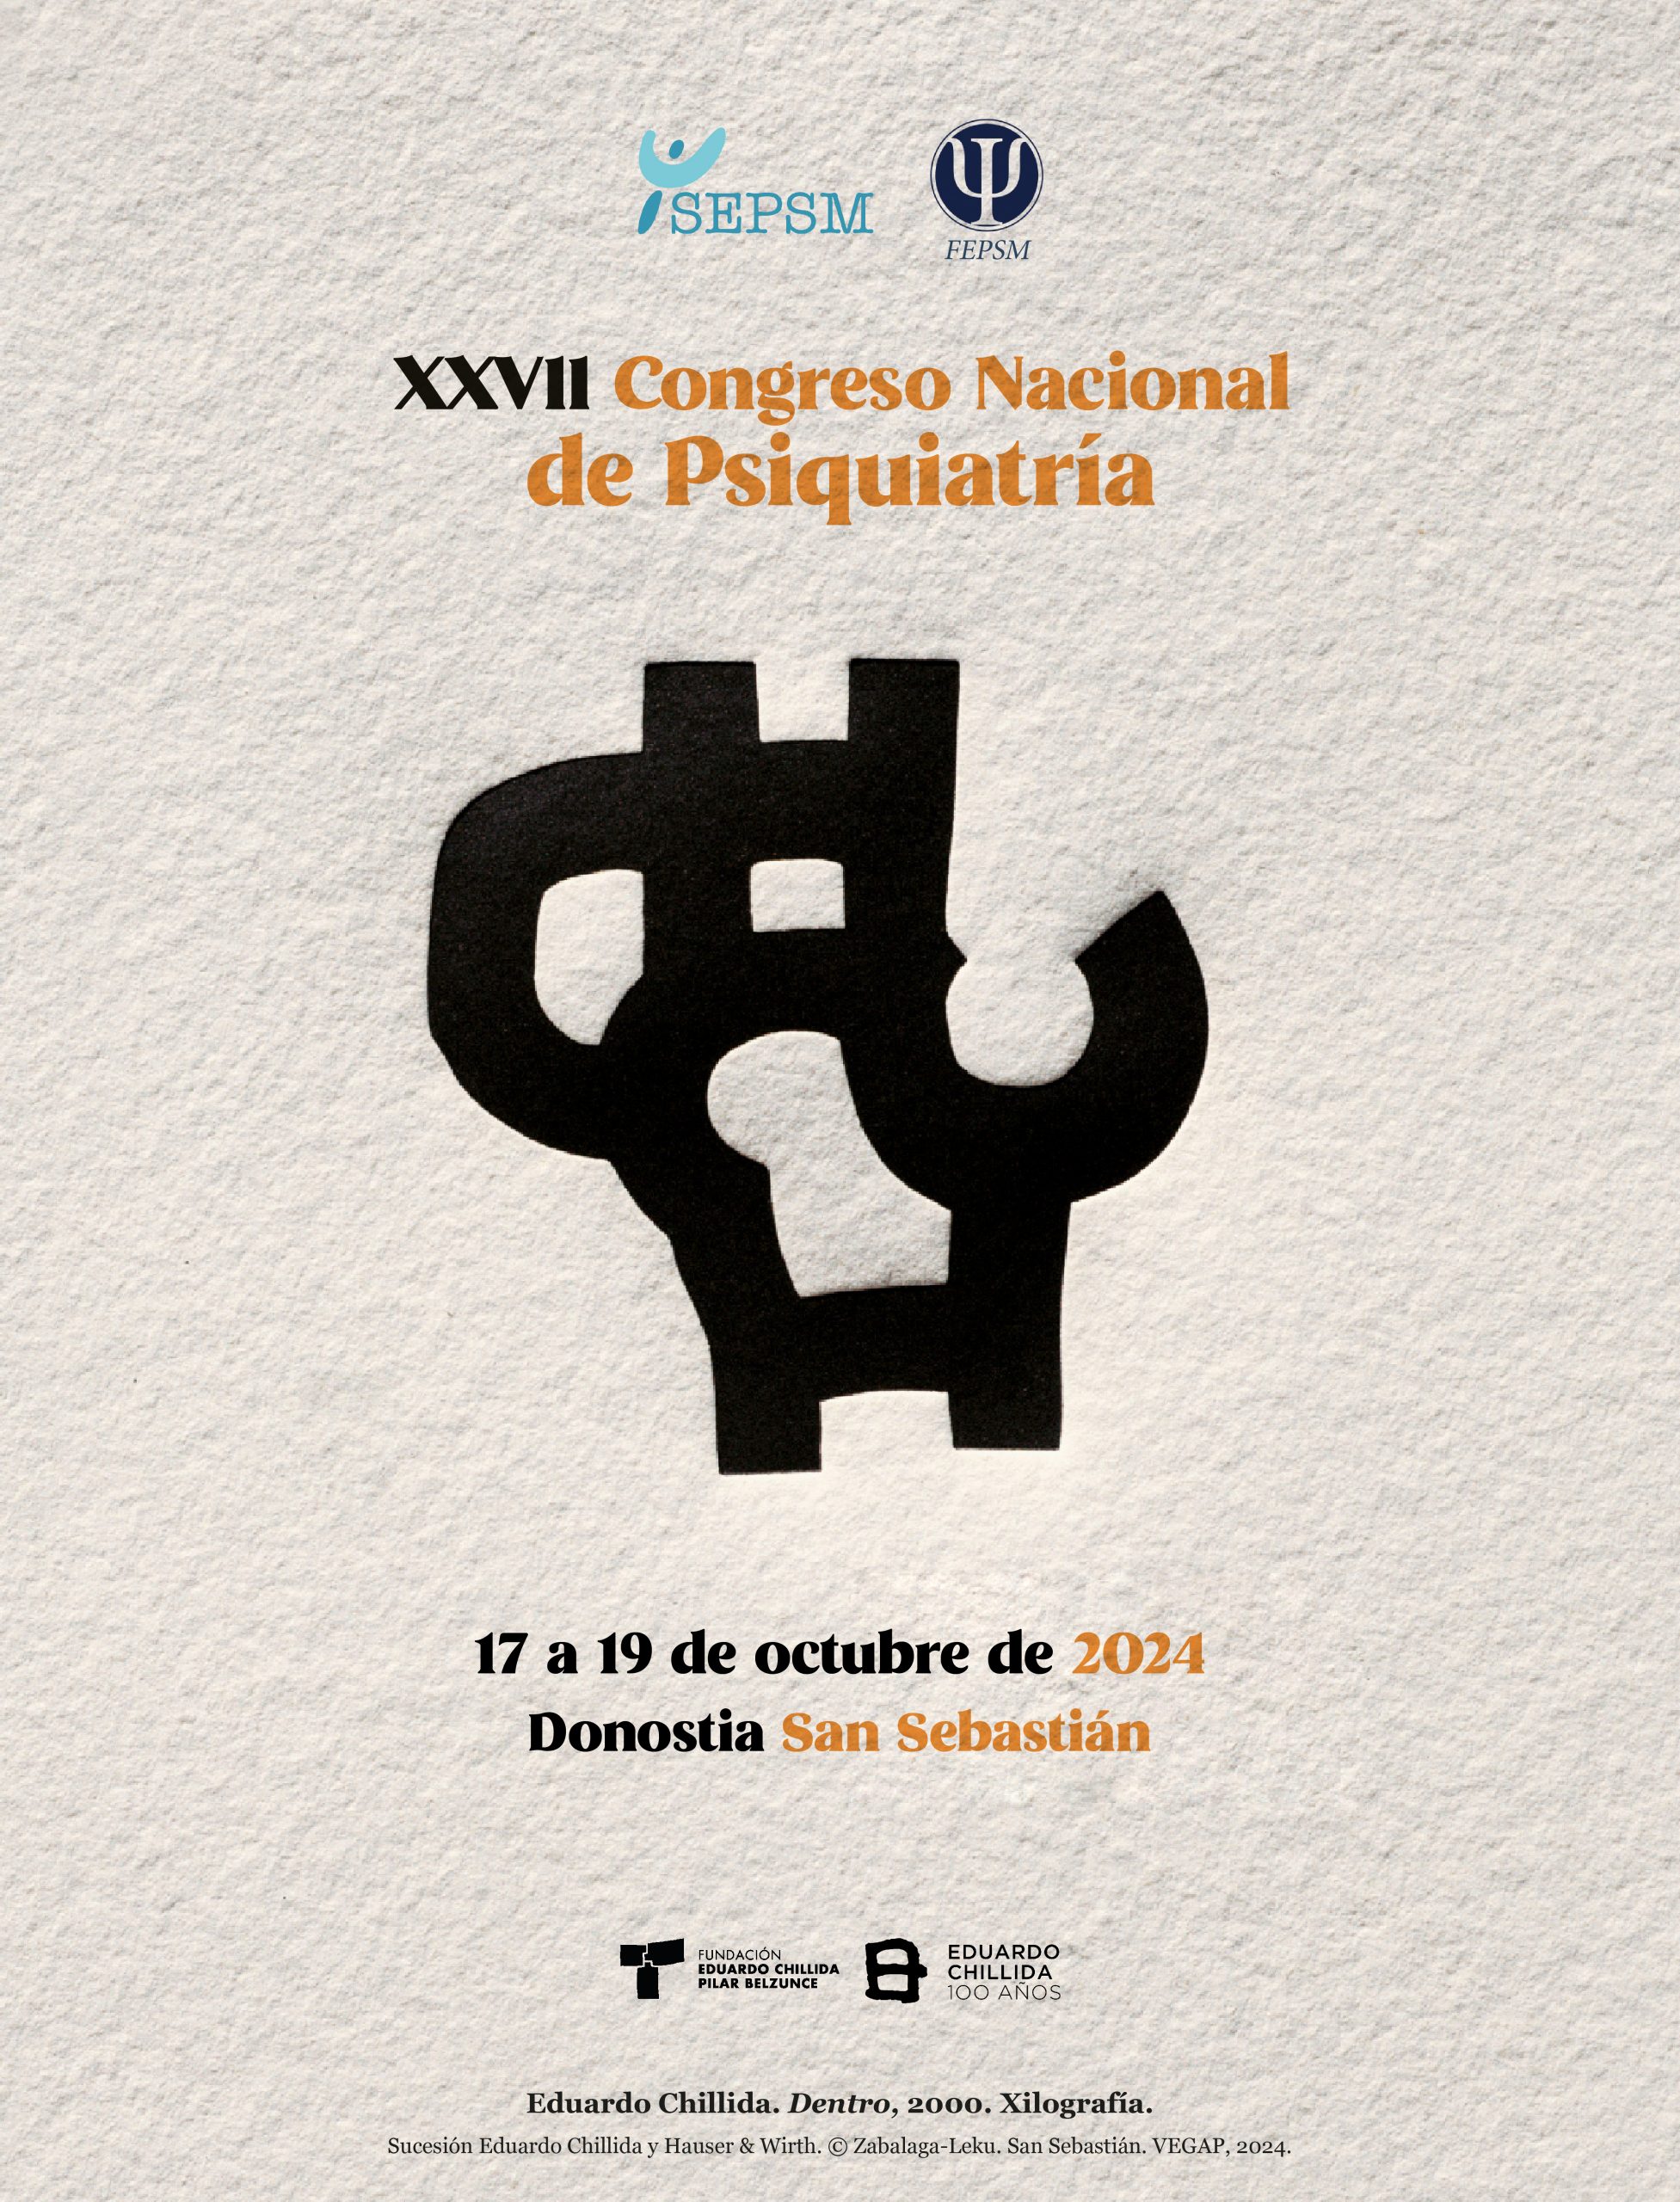 XXVII Congreso Nacional de Psiquiatría